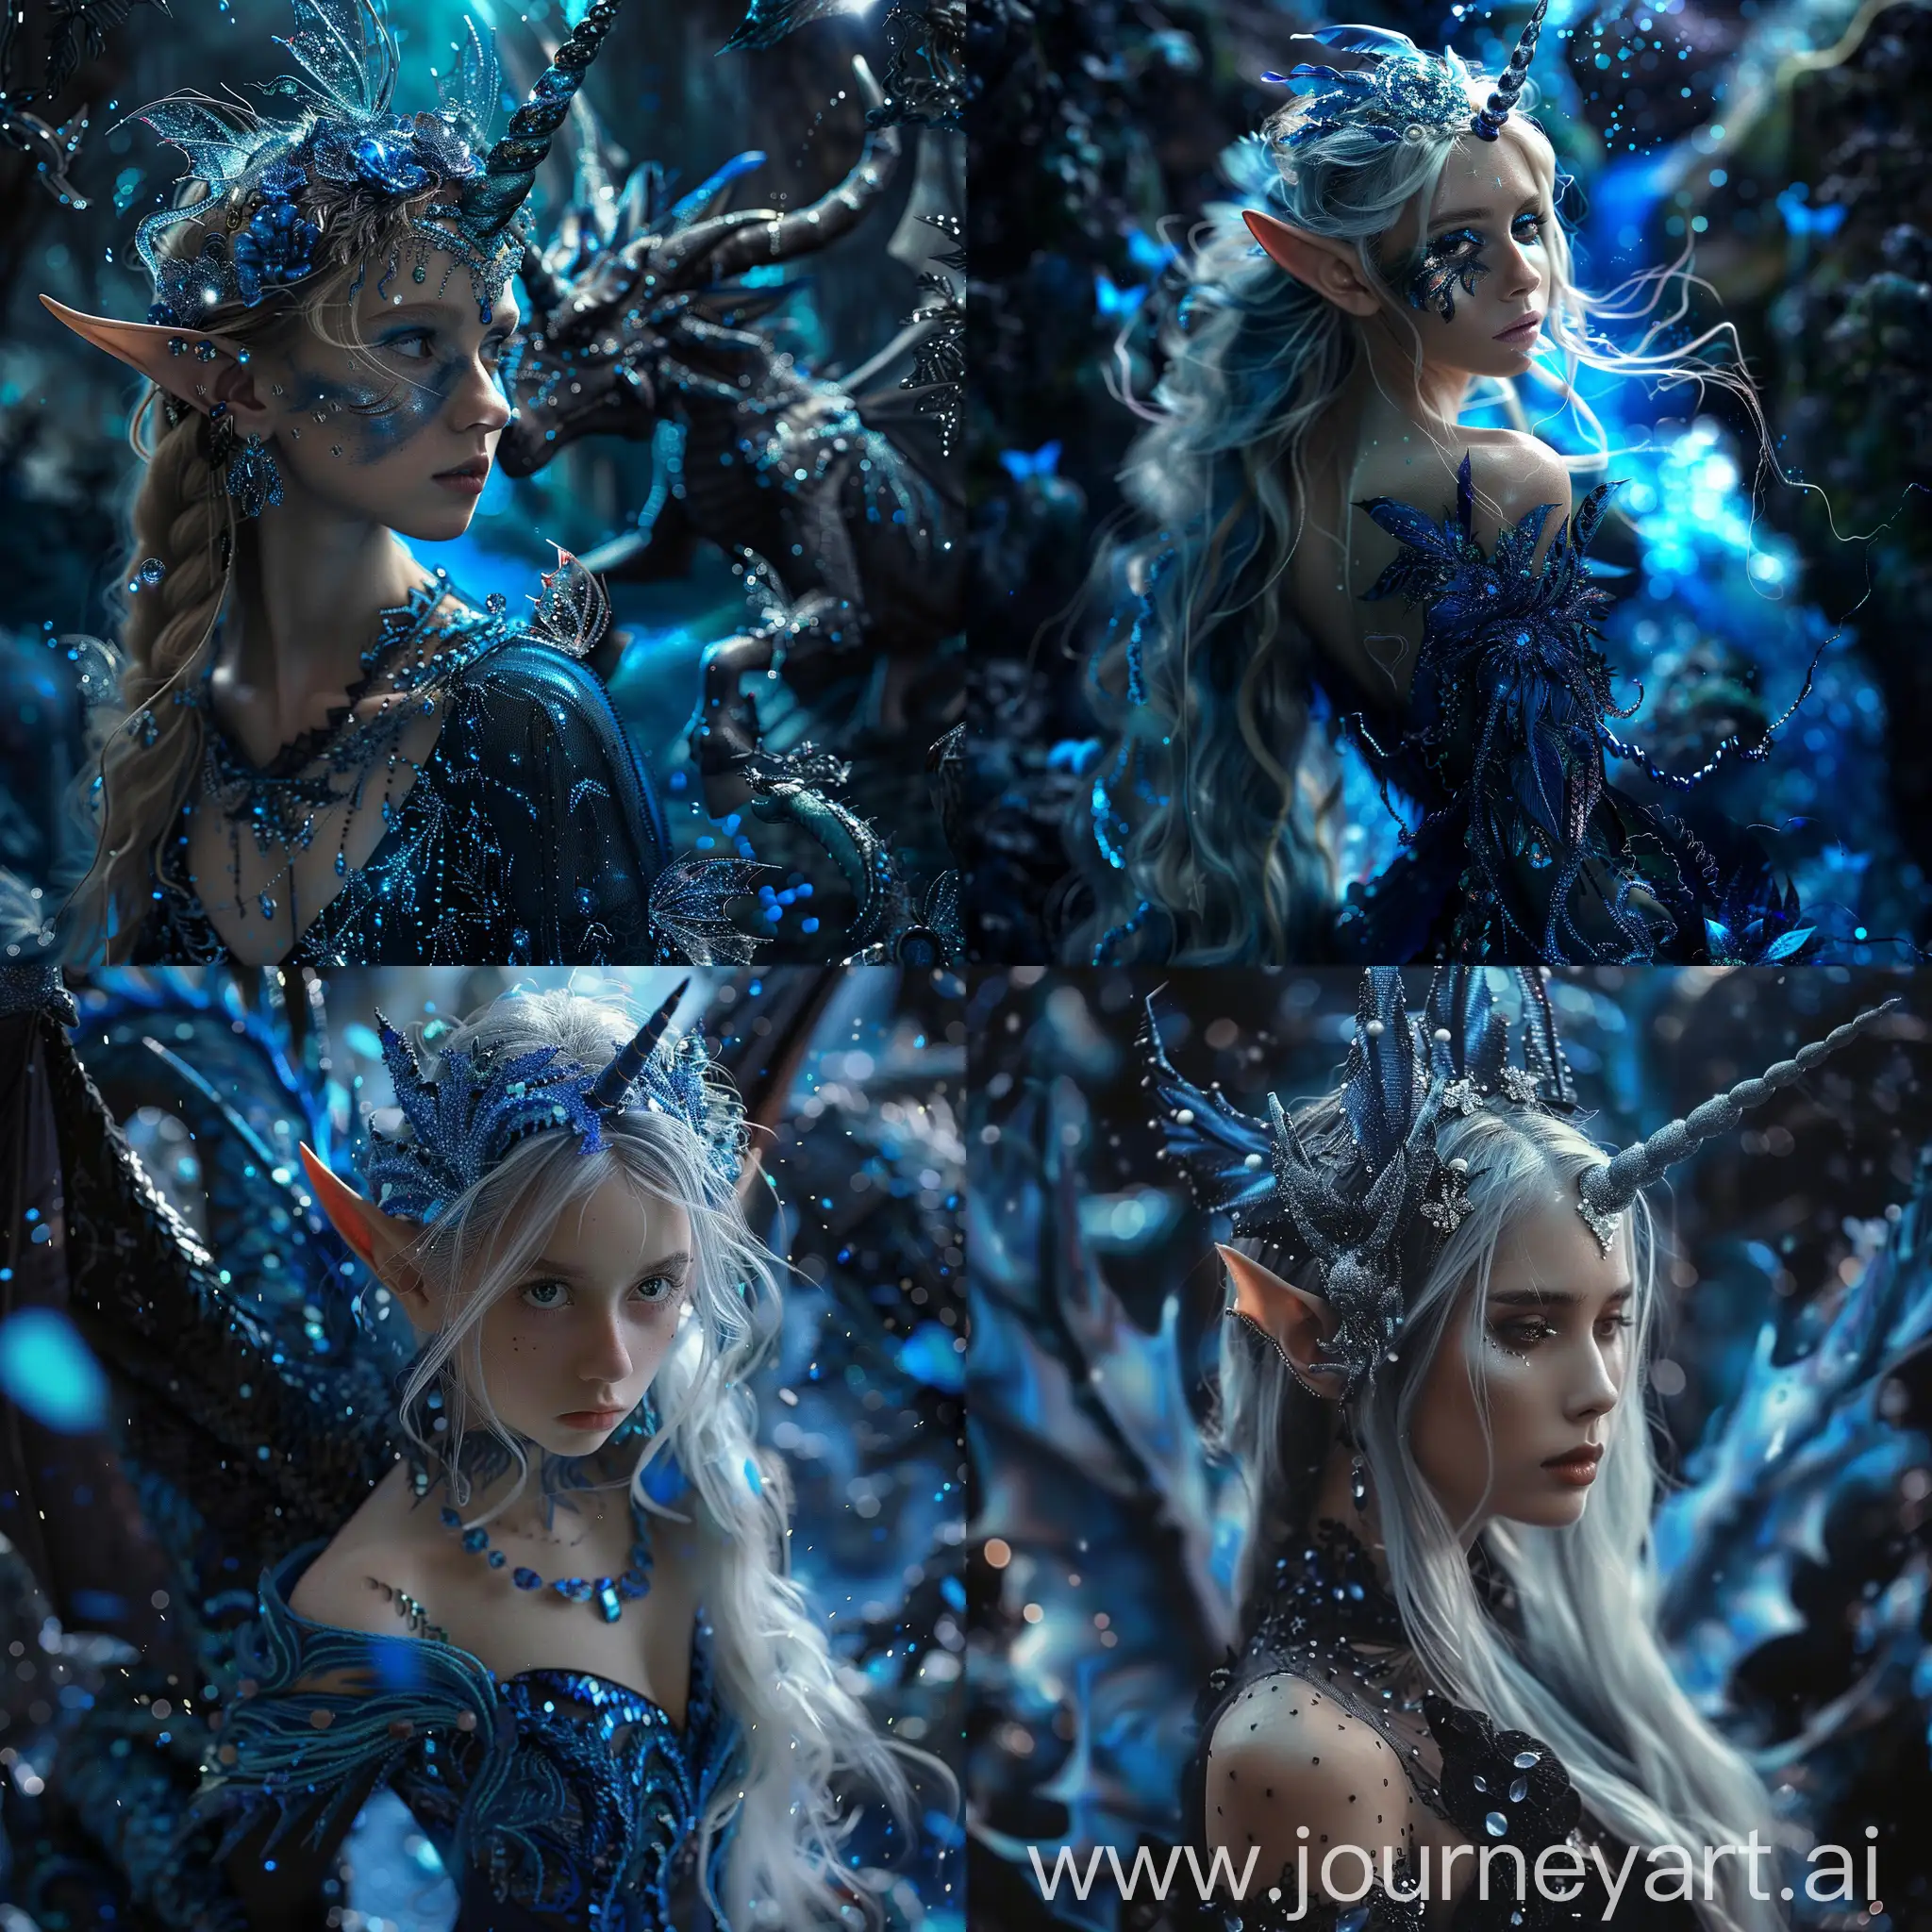 Generiere, die schönste Elfe der Welt in einem wundervollen Zauberland, in dem alles blau und schwarz schimmert und unfassbar wunderschön ist. Dort sind Drachen und Einhörner und die schönsten Elfen der Welt.